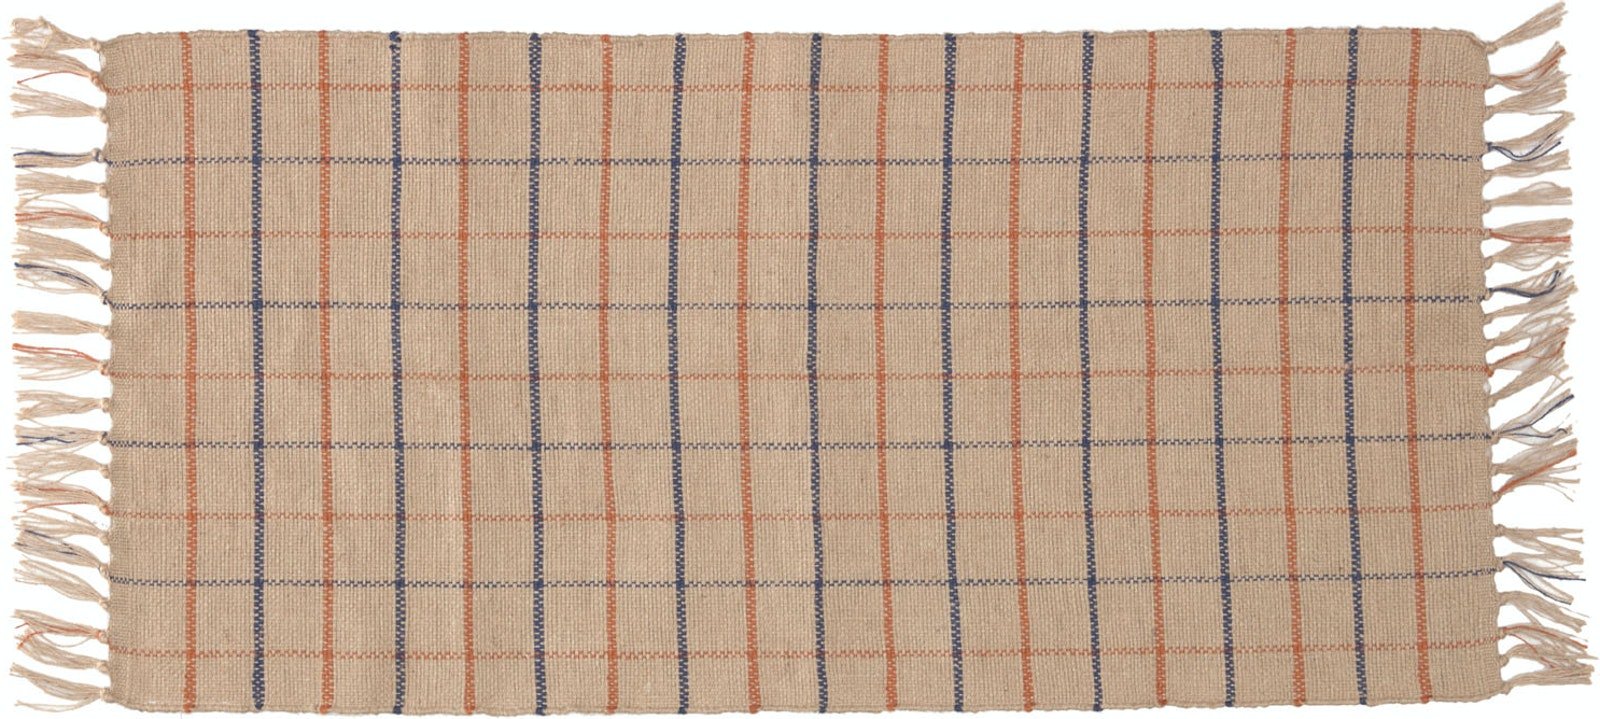 14: Badia, Tæppe, naturlige fibre by LaForma (H: 1 cm. B: 70 cm. L: 140 cm., Natur/Blå/Rød)